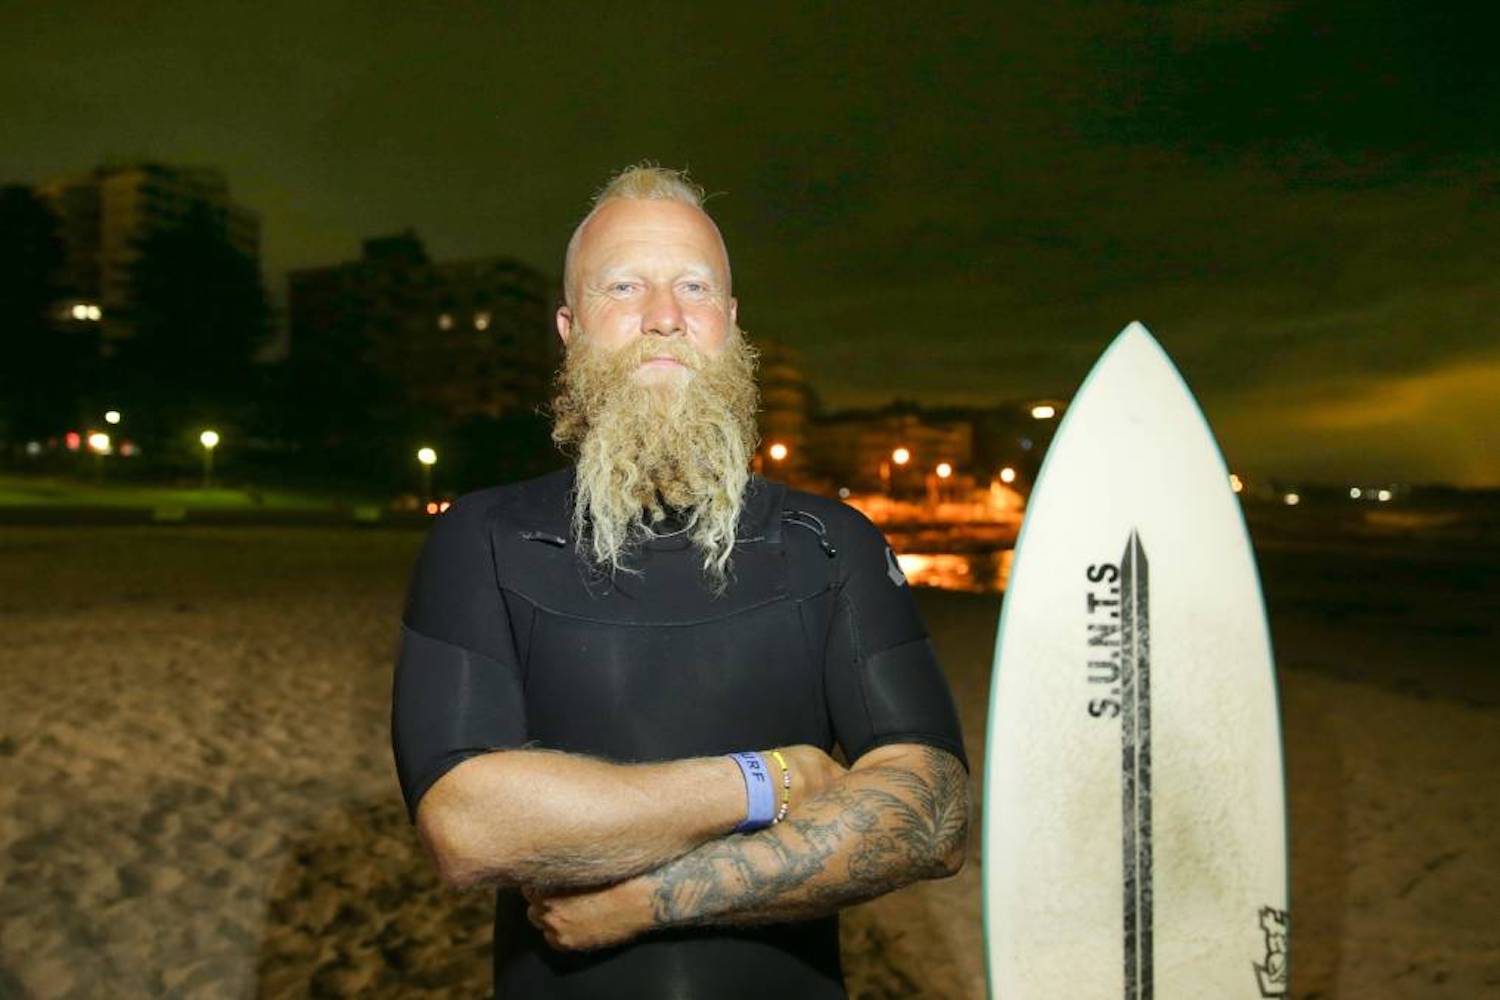 Una leyenda australiana intenta la sesión de surf más larga del mundo para concienciar sobre la salud mental